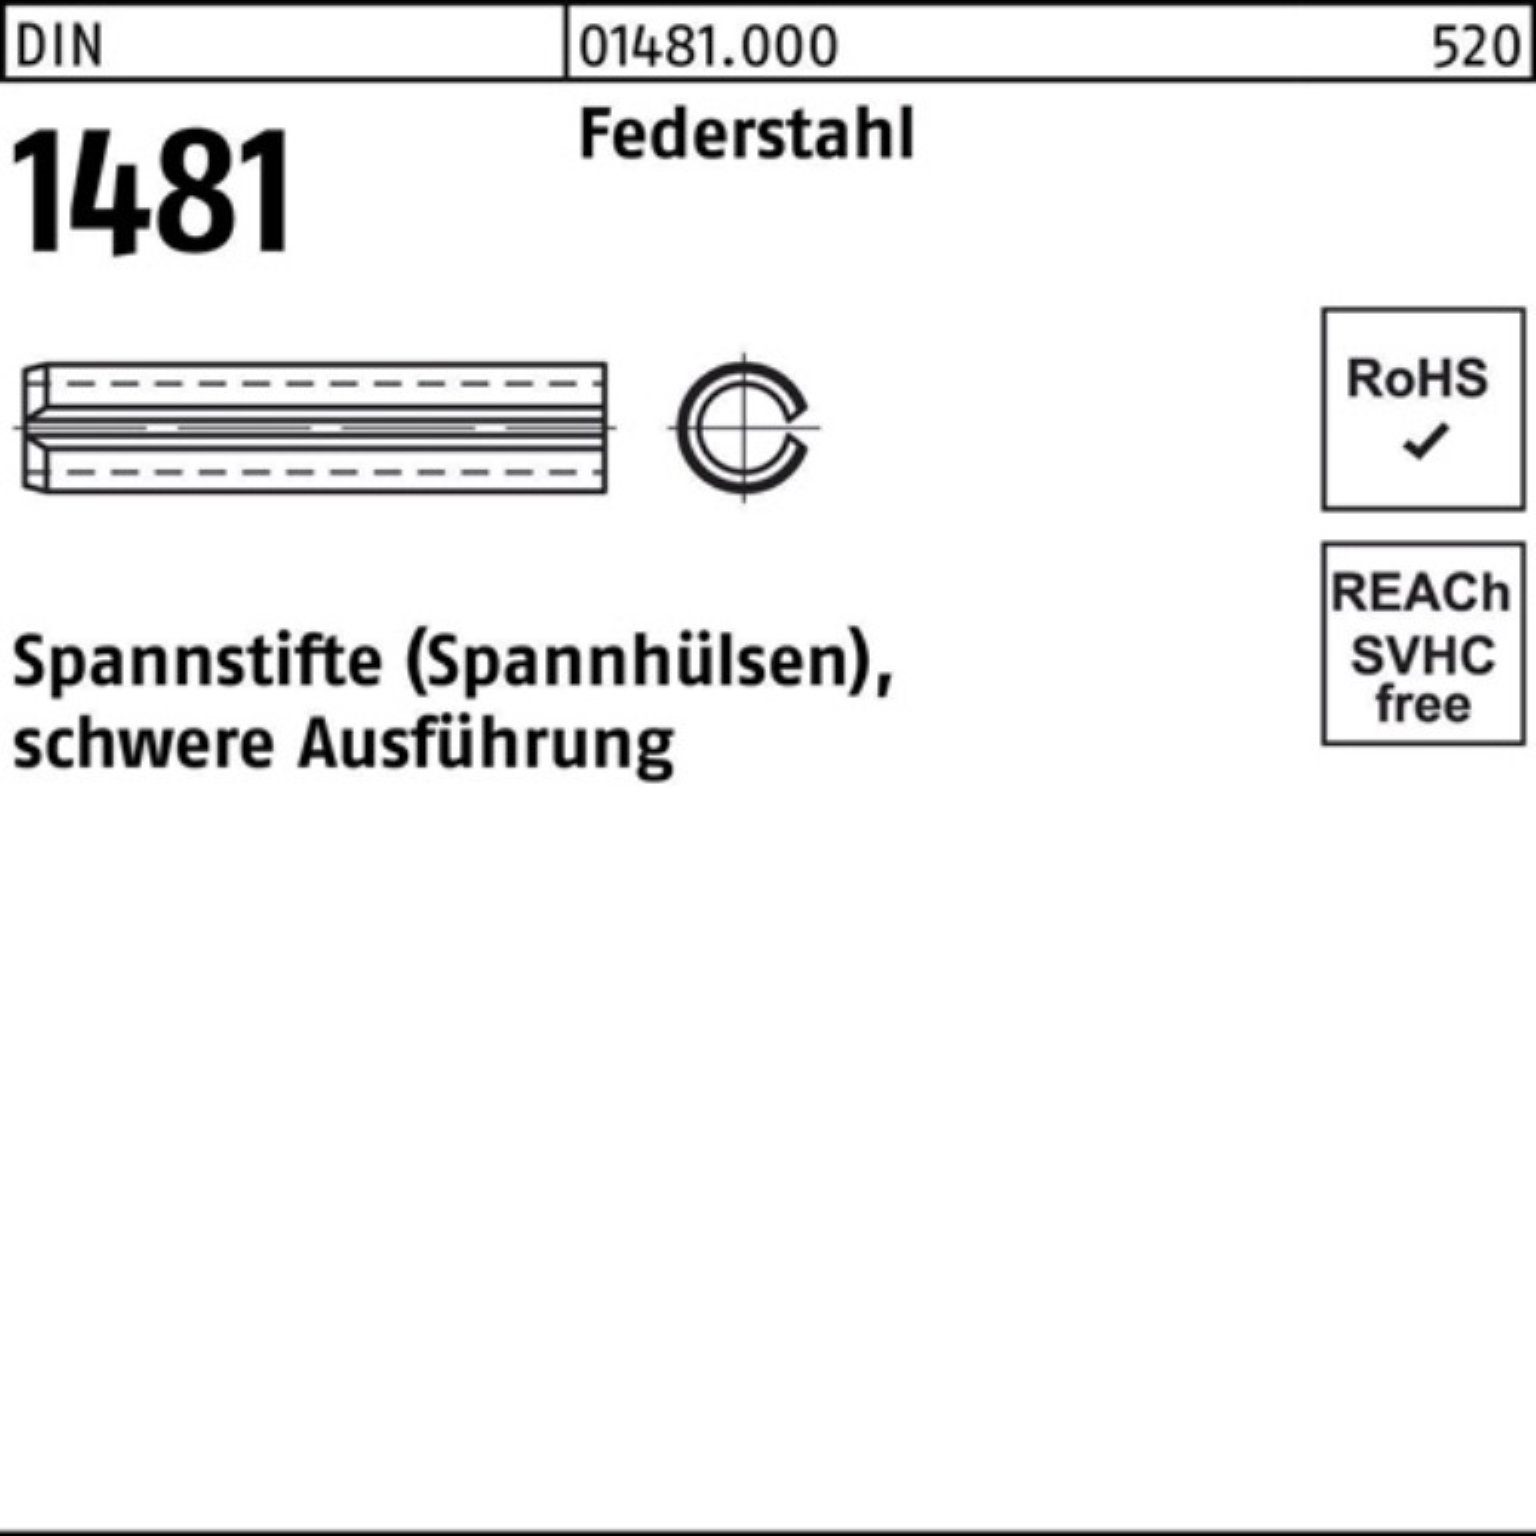 Reyher Spannstift 100er Federstahl schwere 1481 Ausführung Pack 80 Spannstift DIN 1 28x